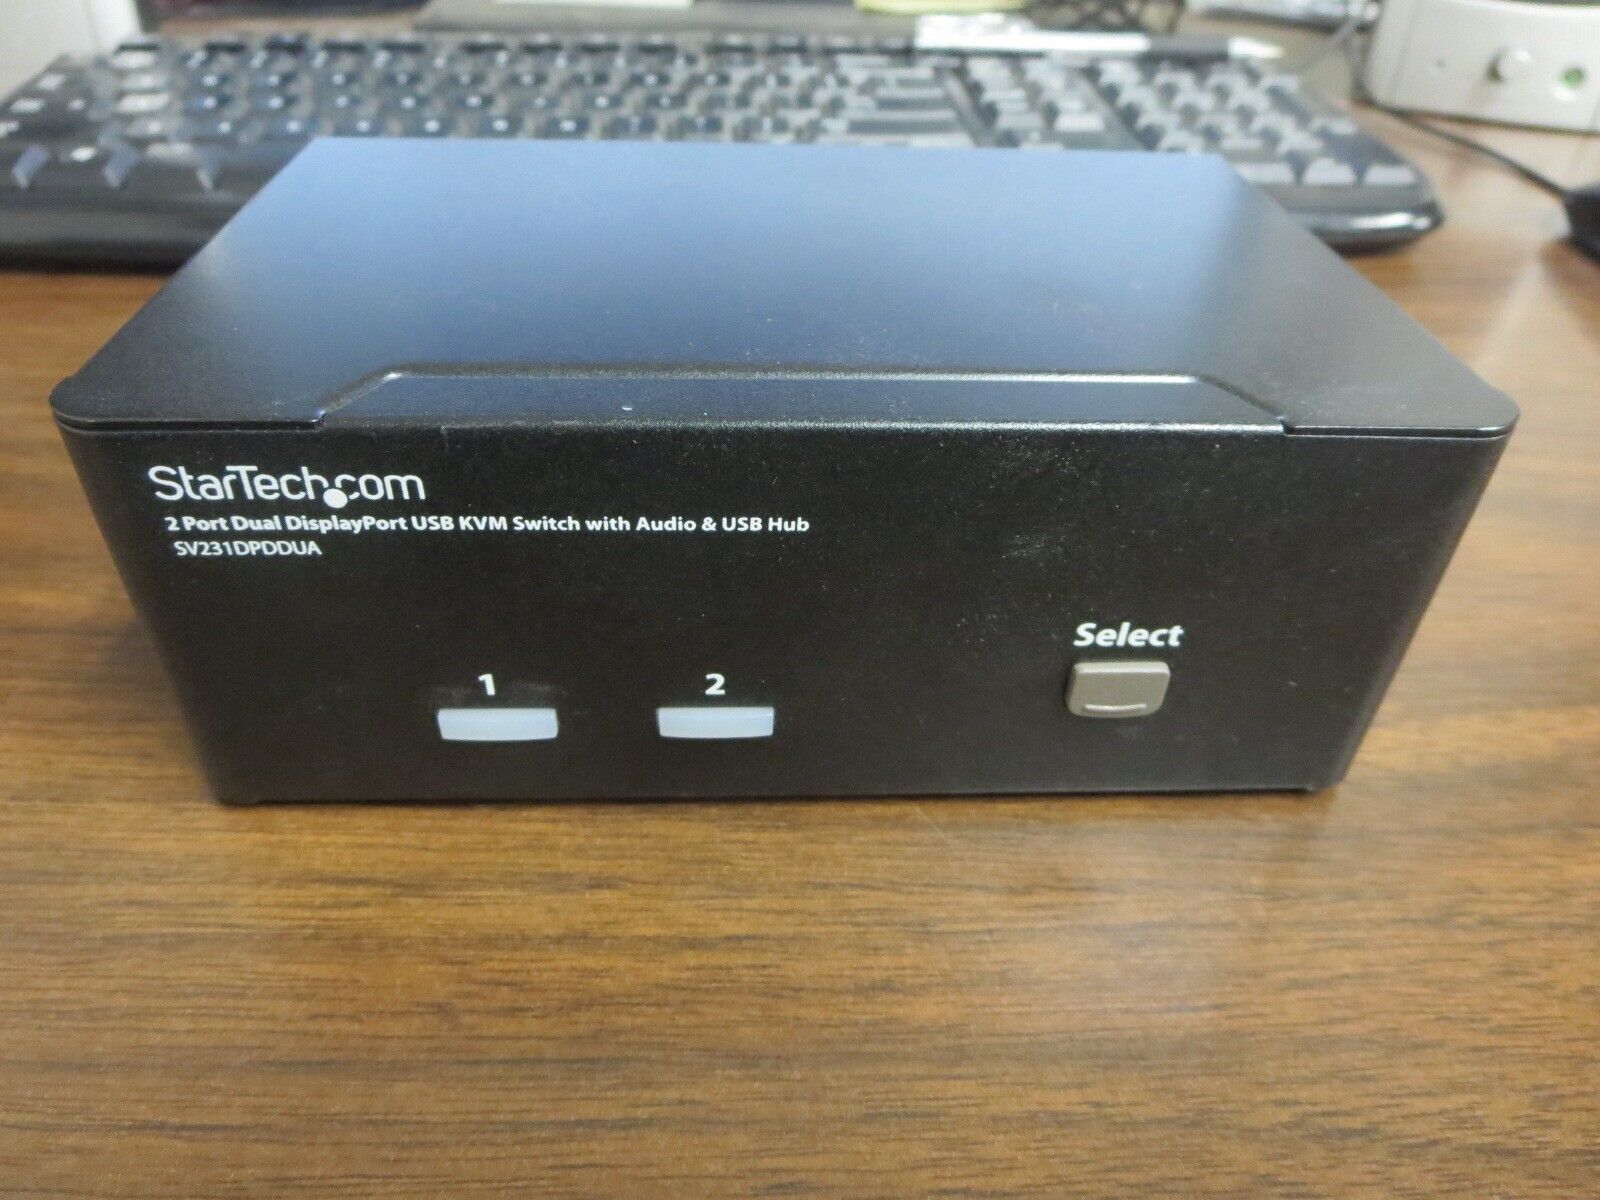 StarTech.com  (SV231DPDDUA) 2-Ports Dual DisplayPort USB KVM Switch Audio/US Hub